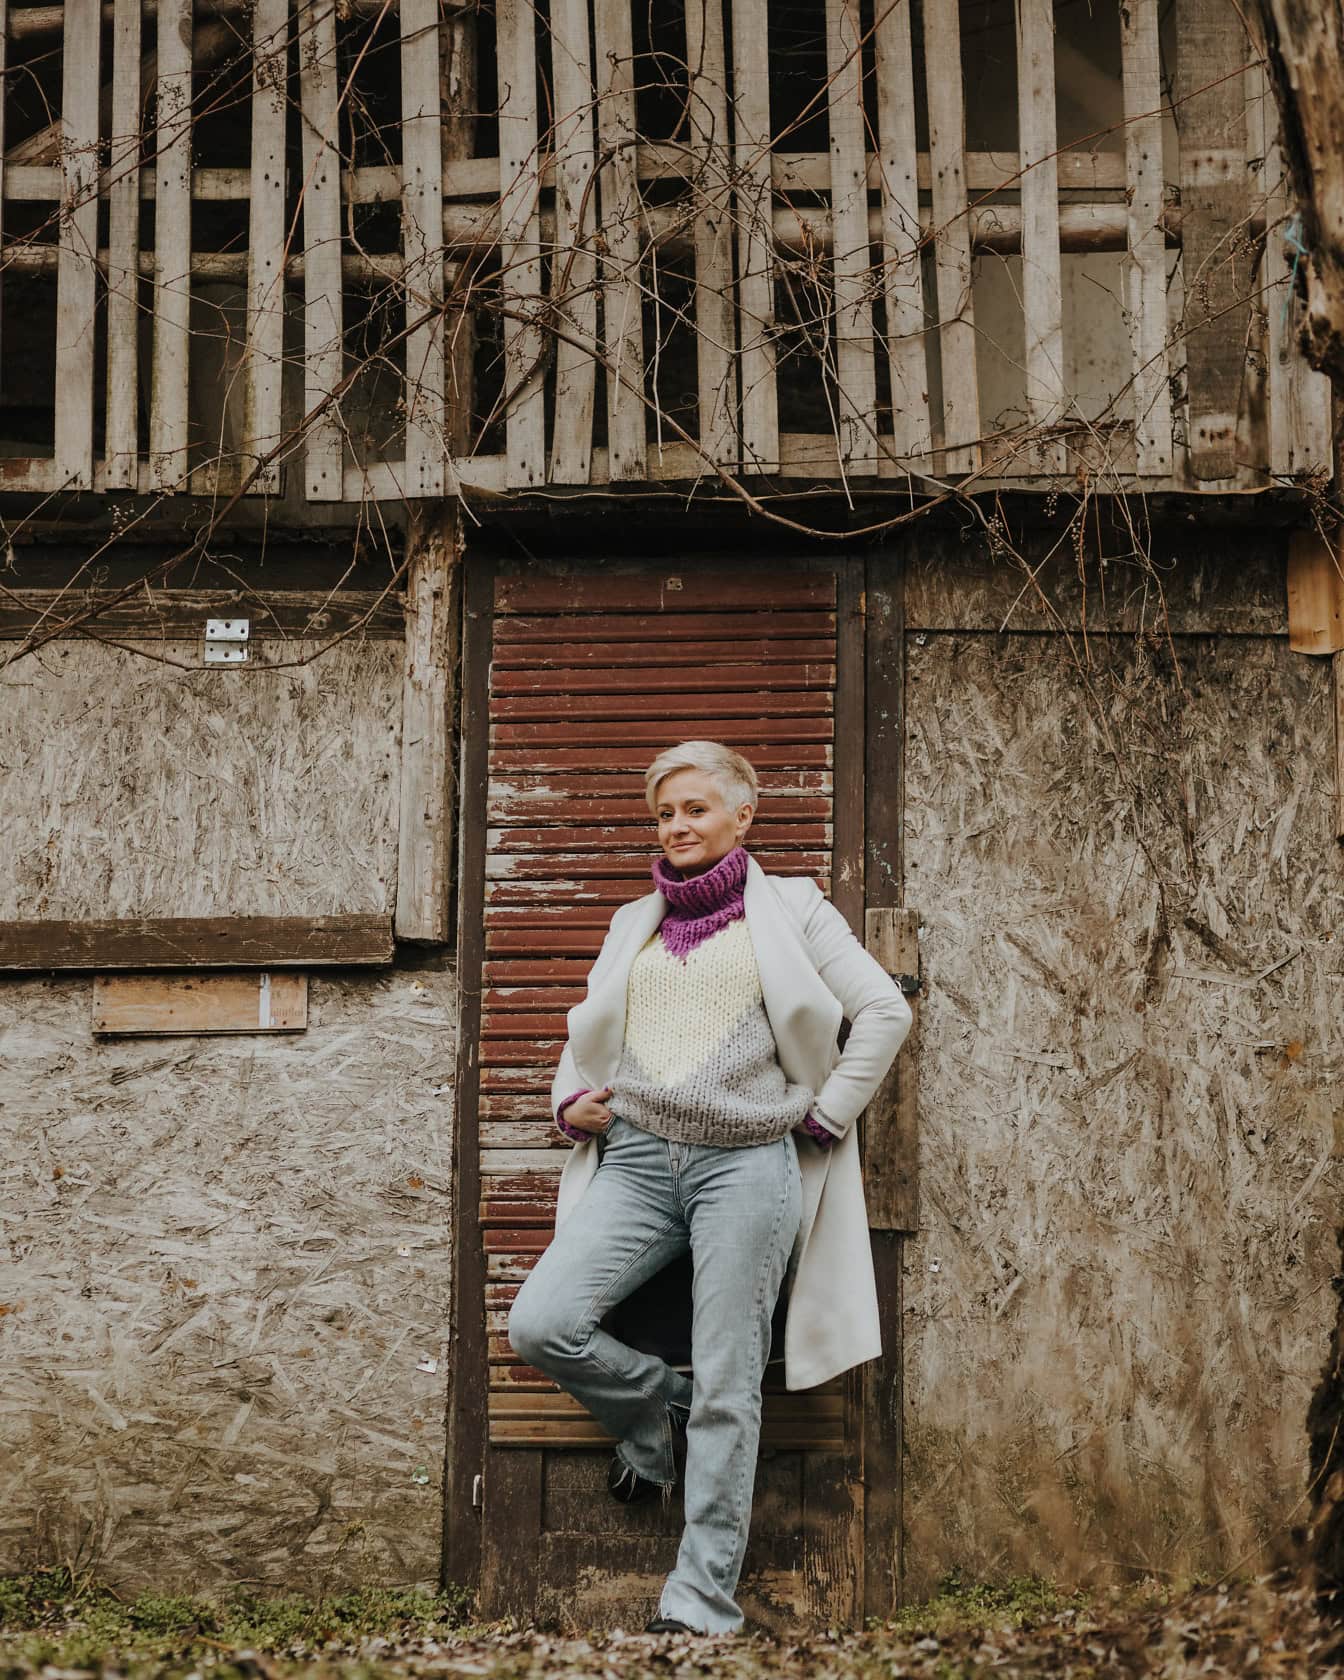 Một người phụ nữ tạo dáng trong quần tây, áo len đan tay và áo khoác trắng dựa vào cửa một nhà kho cũ